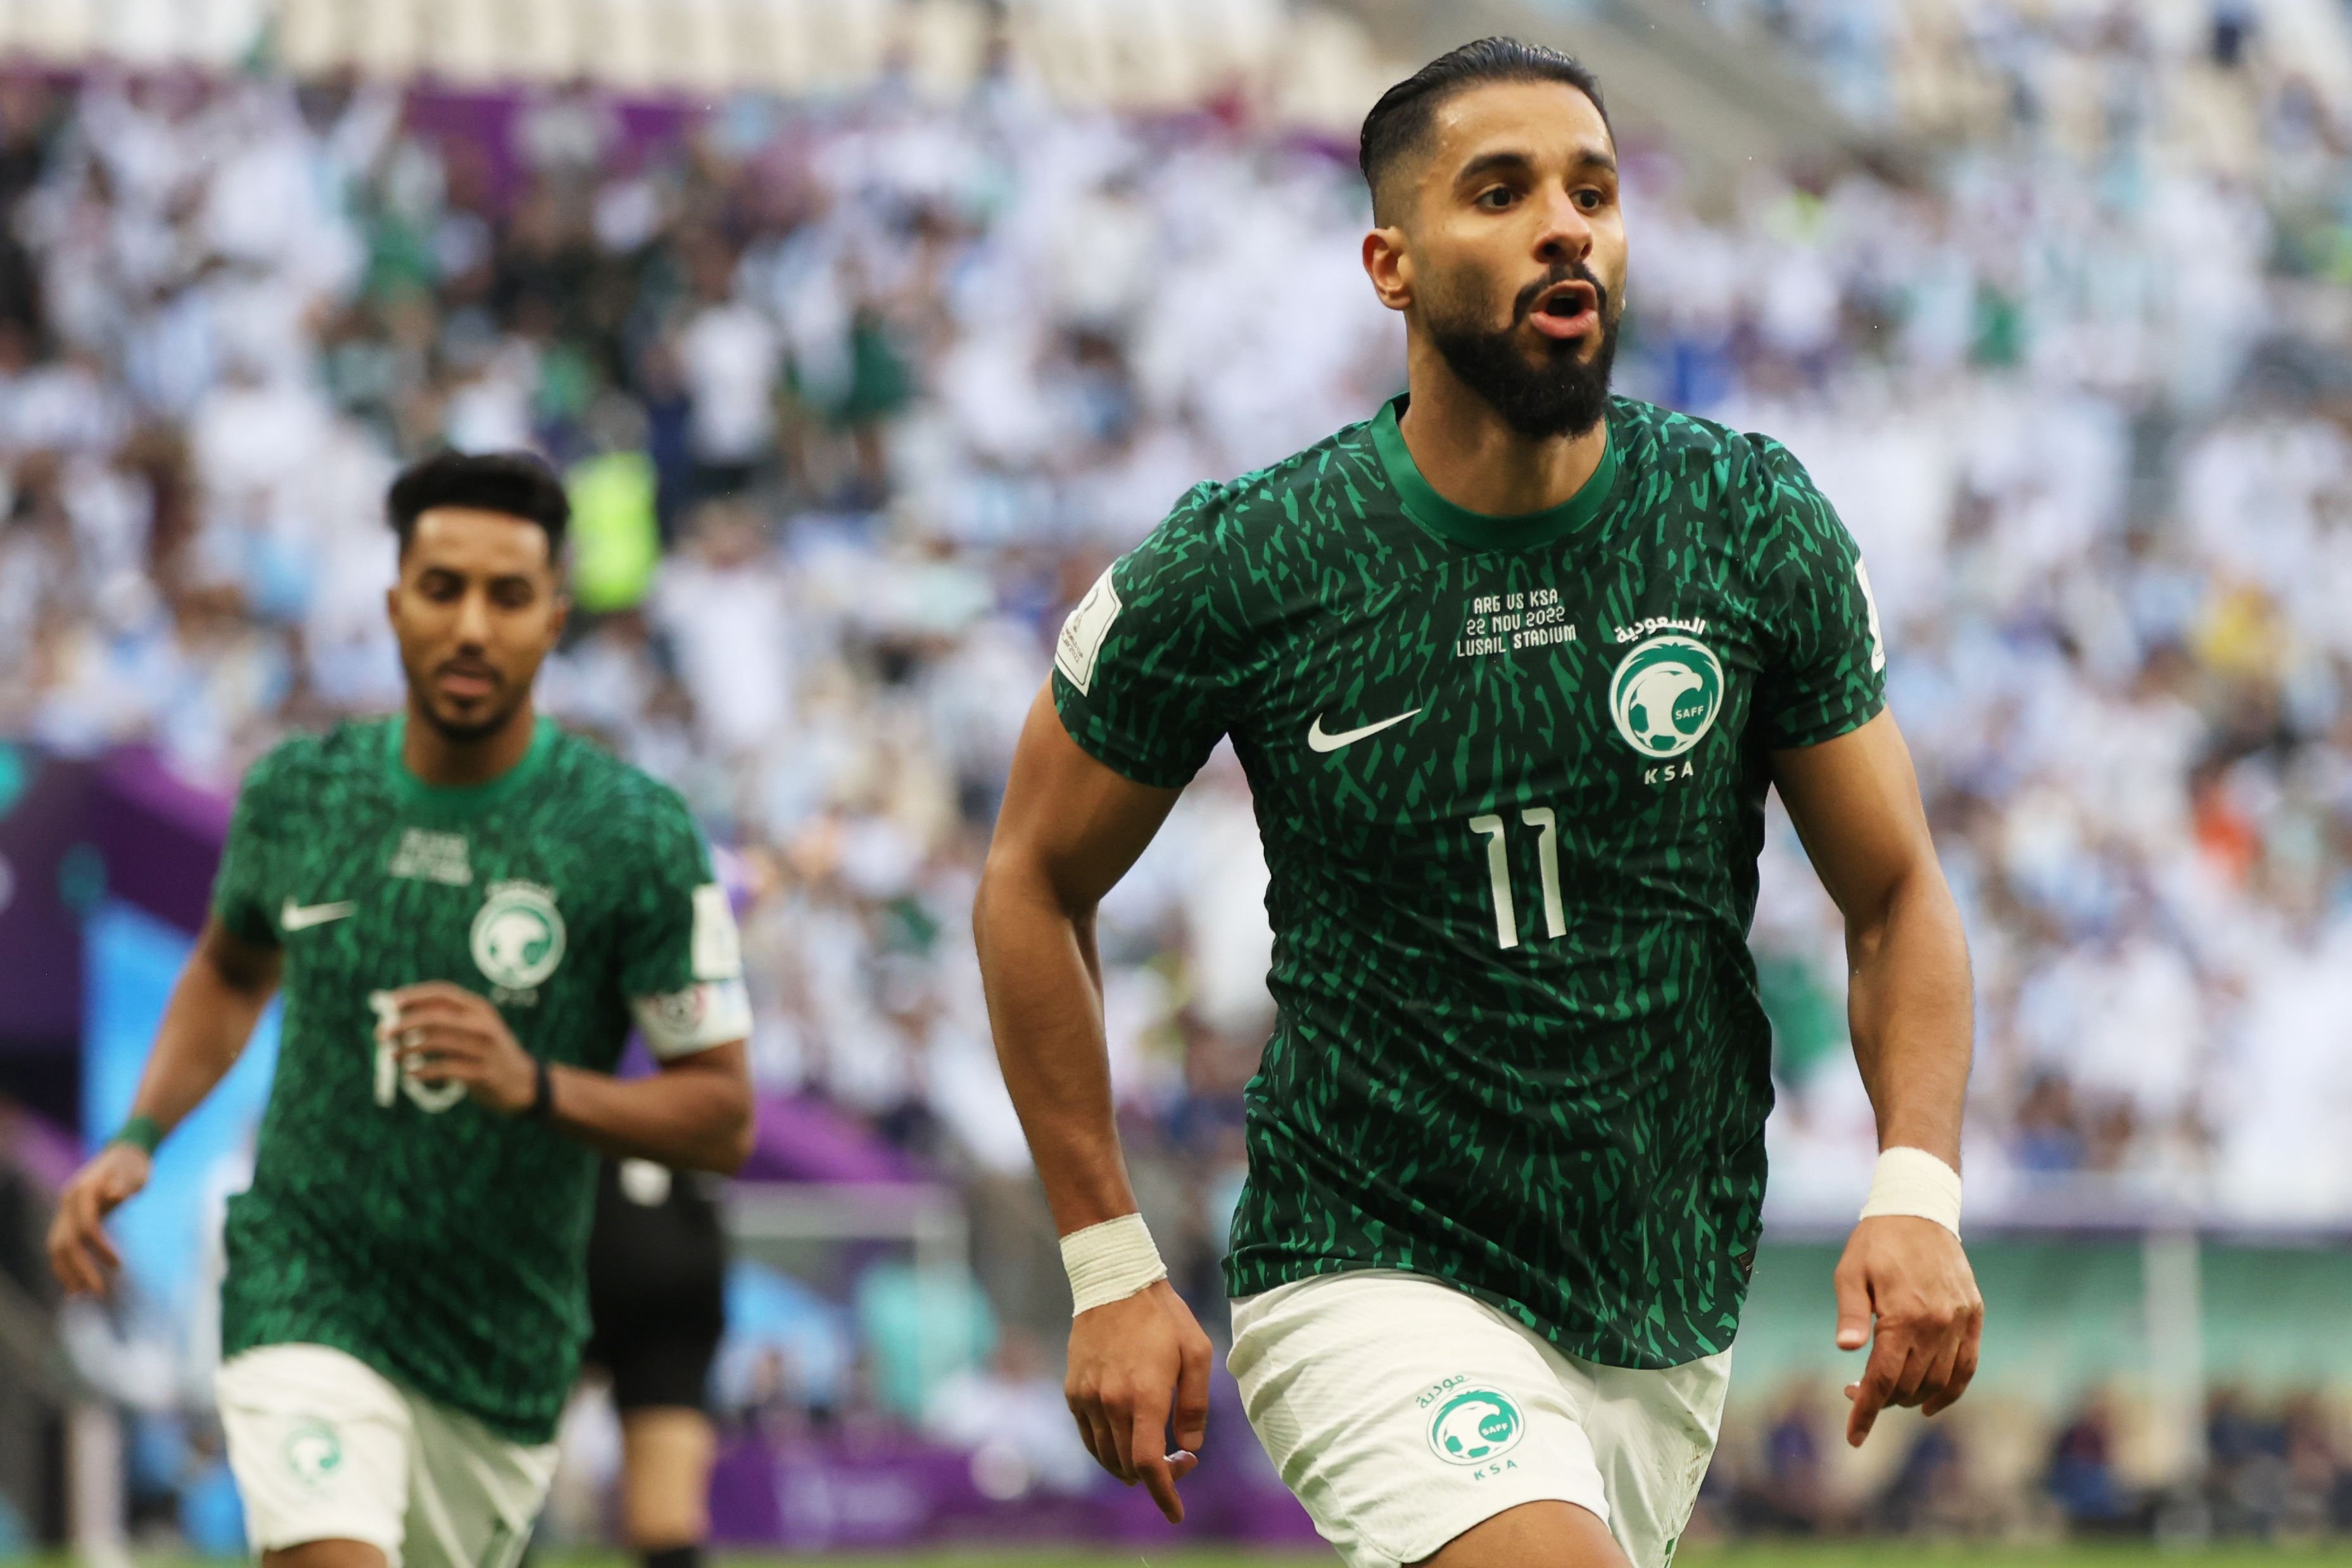 Svetsko prvenstvo 2022: O usponu fudbalu u Saudijskoj Arabiji sa srpskim trenerima i igračima